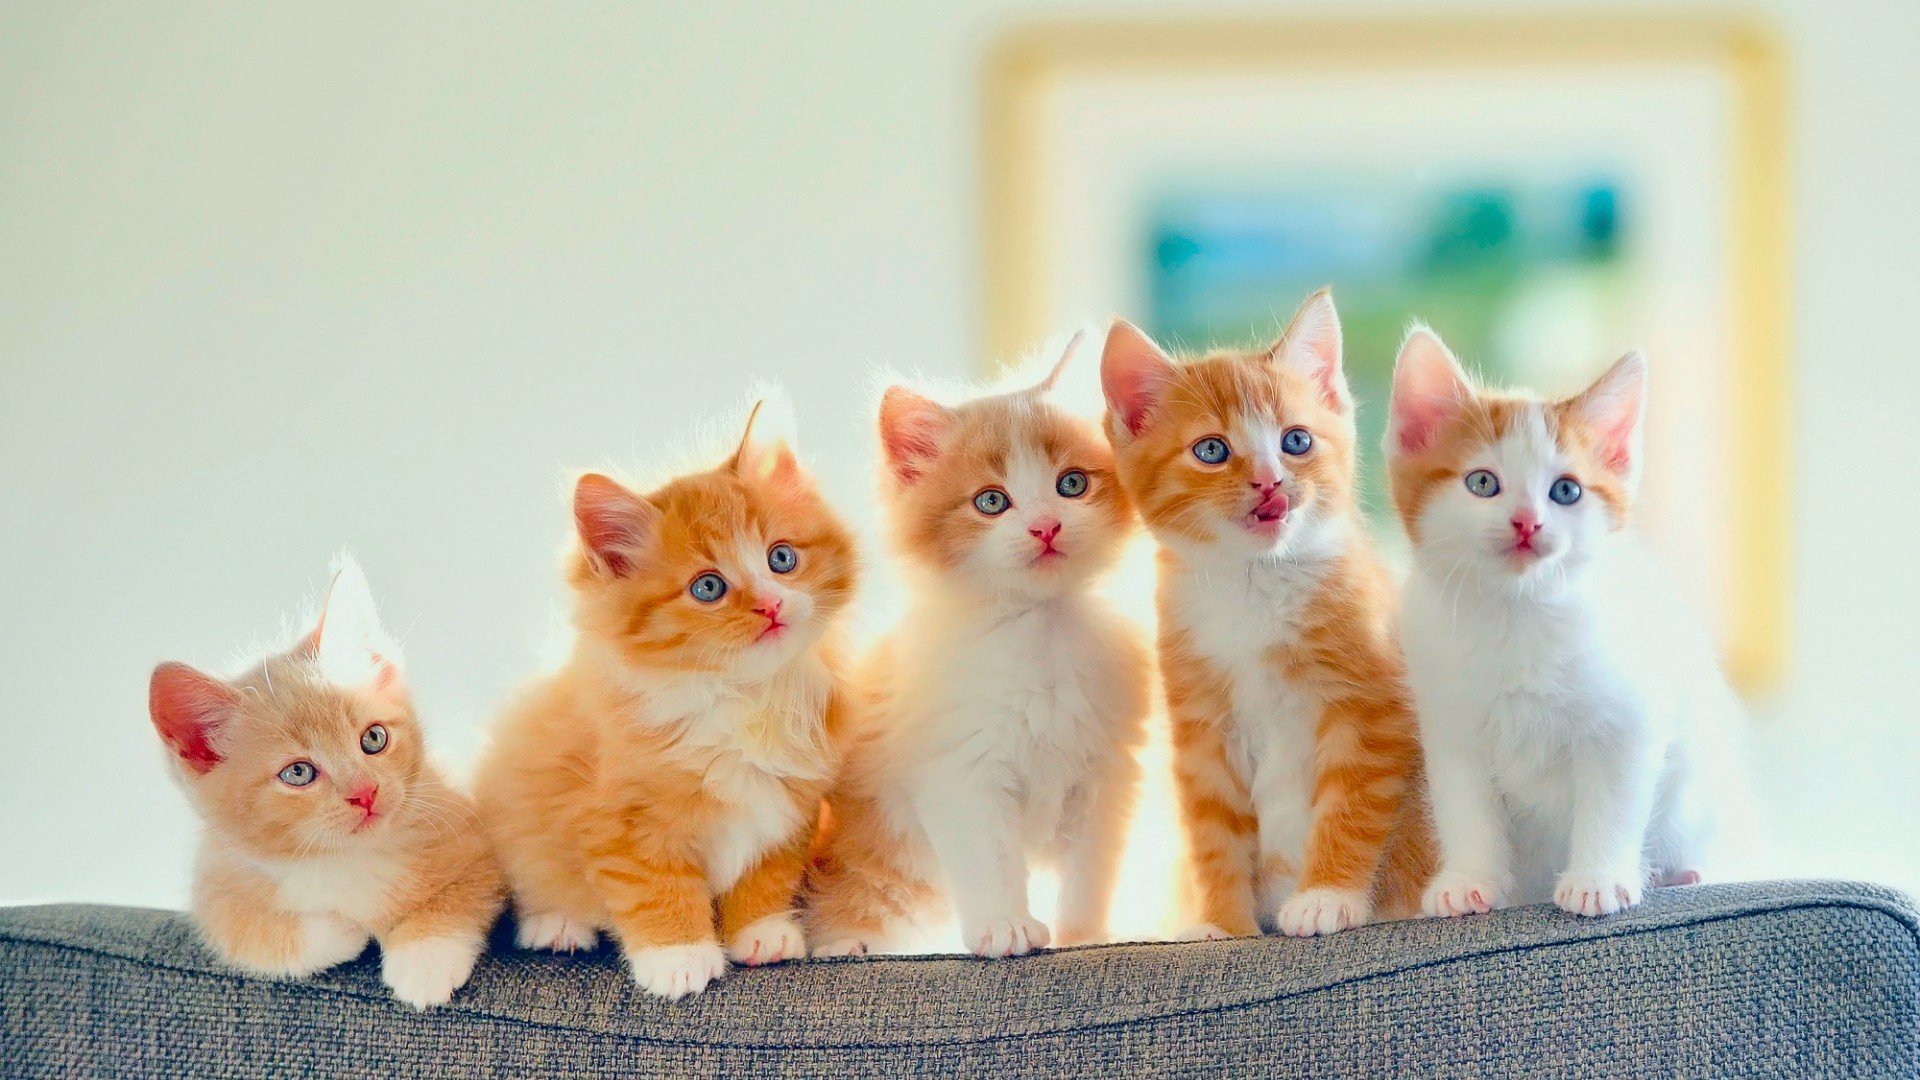 小猫,小手,5只,注视,凝望,沙发的图片,可爱动物壁纸